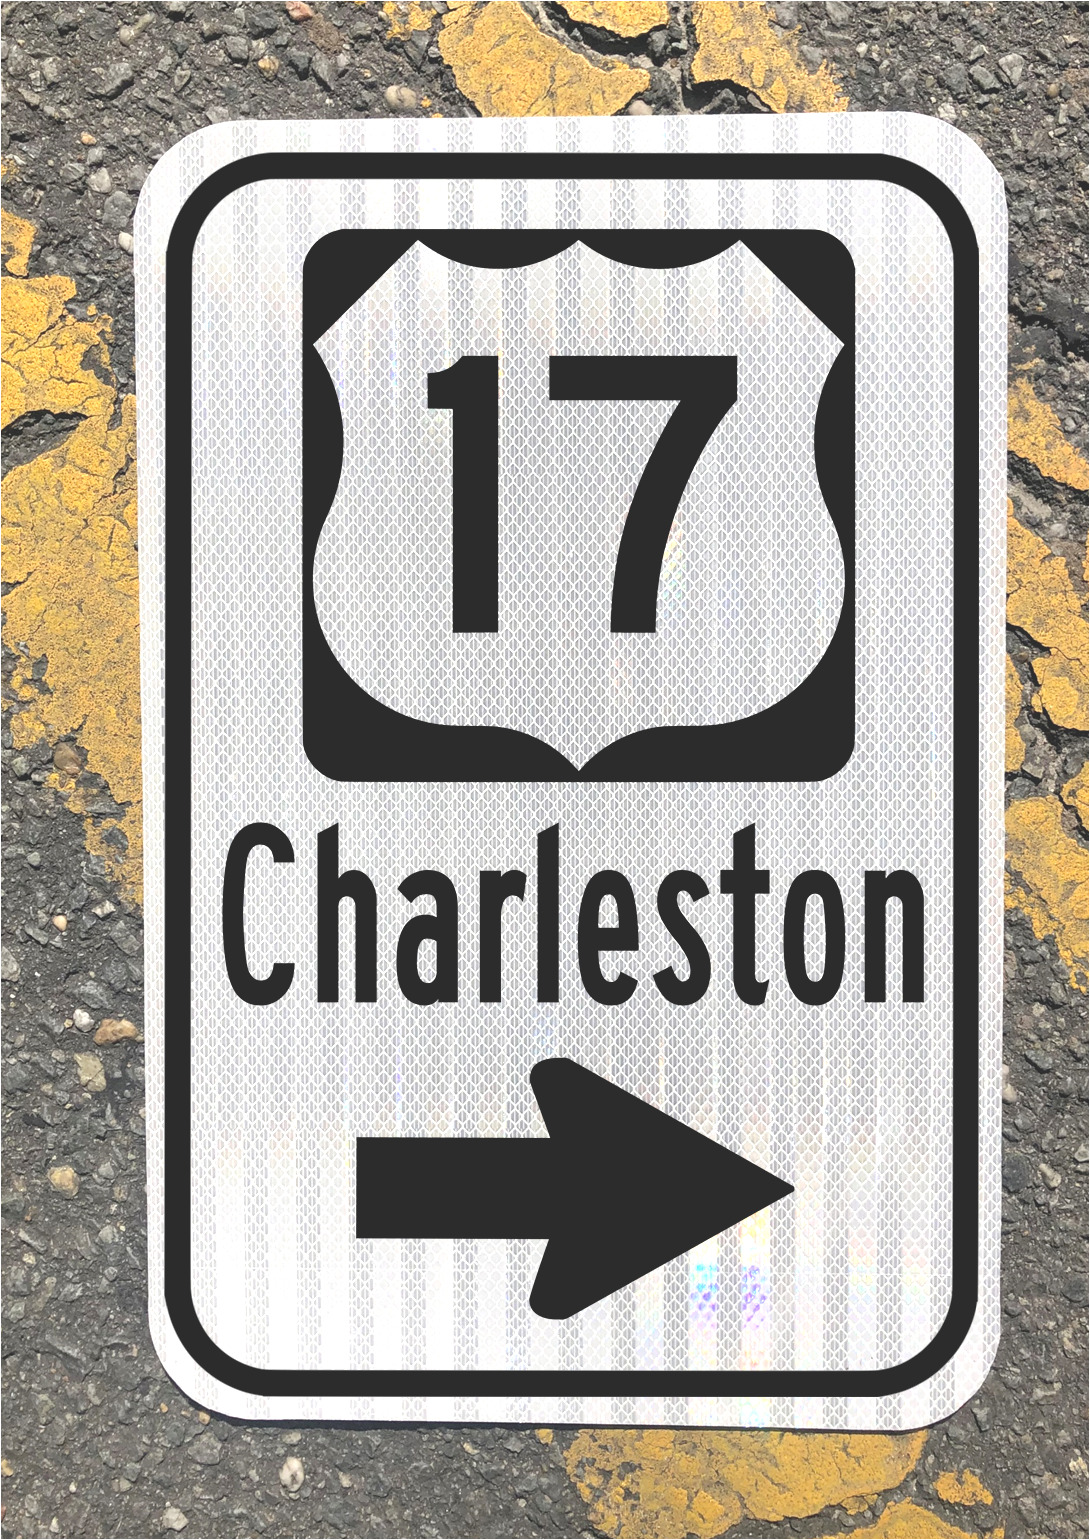 CHARLESTON SOUTH CAROLINA Highway US 17 road sign 12\